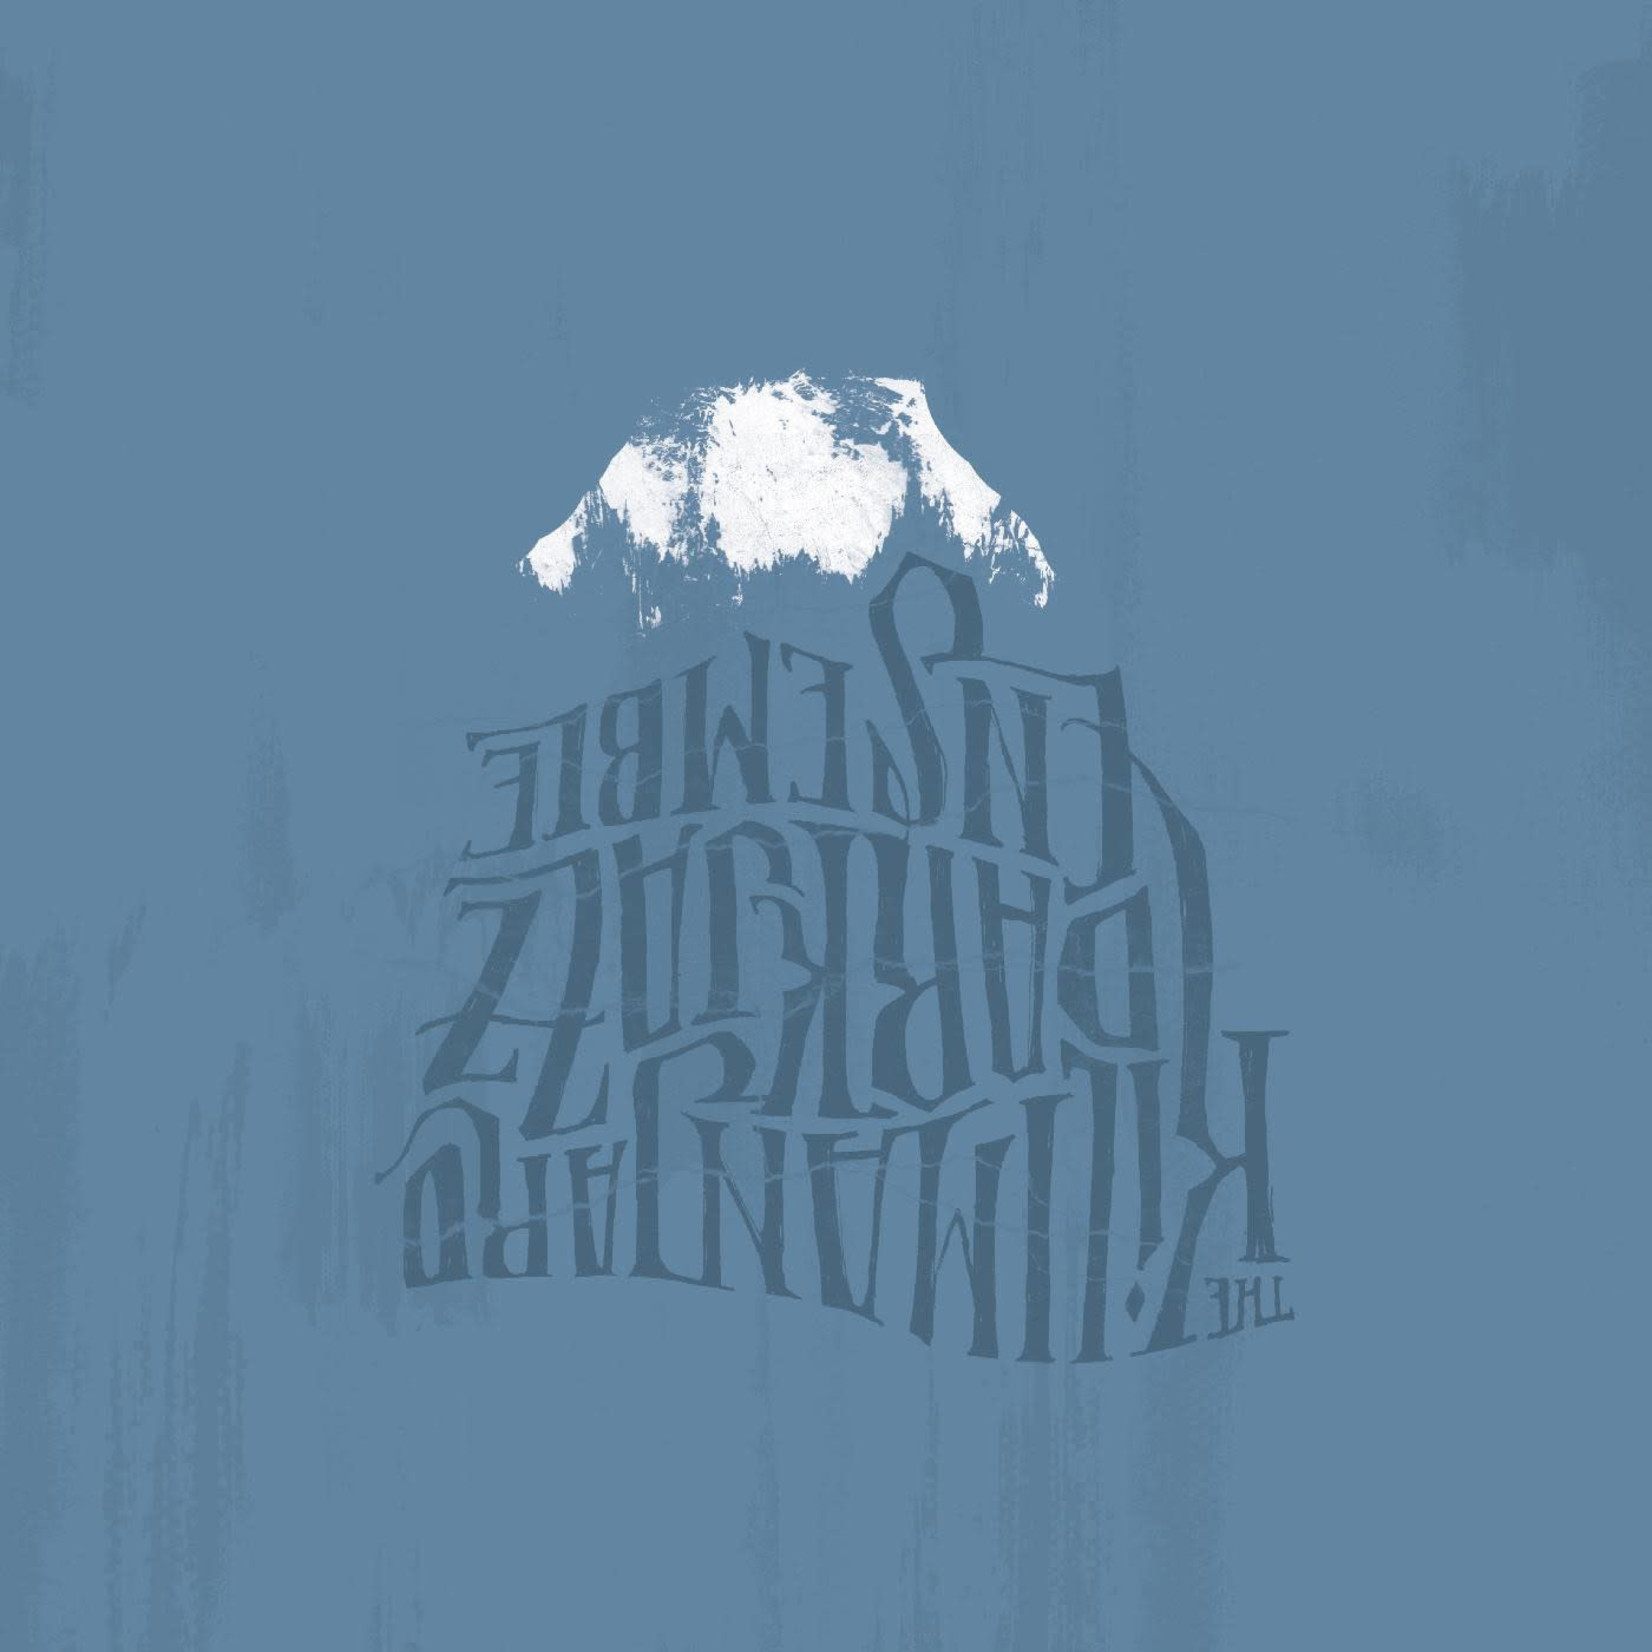 [New] The Kilimanjaro Darkjazz Ensemble - The Kilimanjaro Darkjazz Ensemble (2LP)